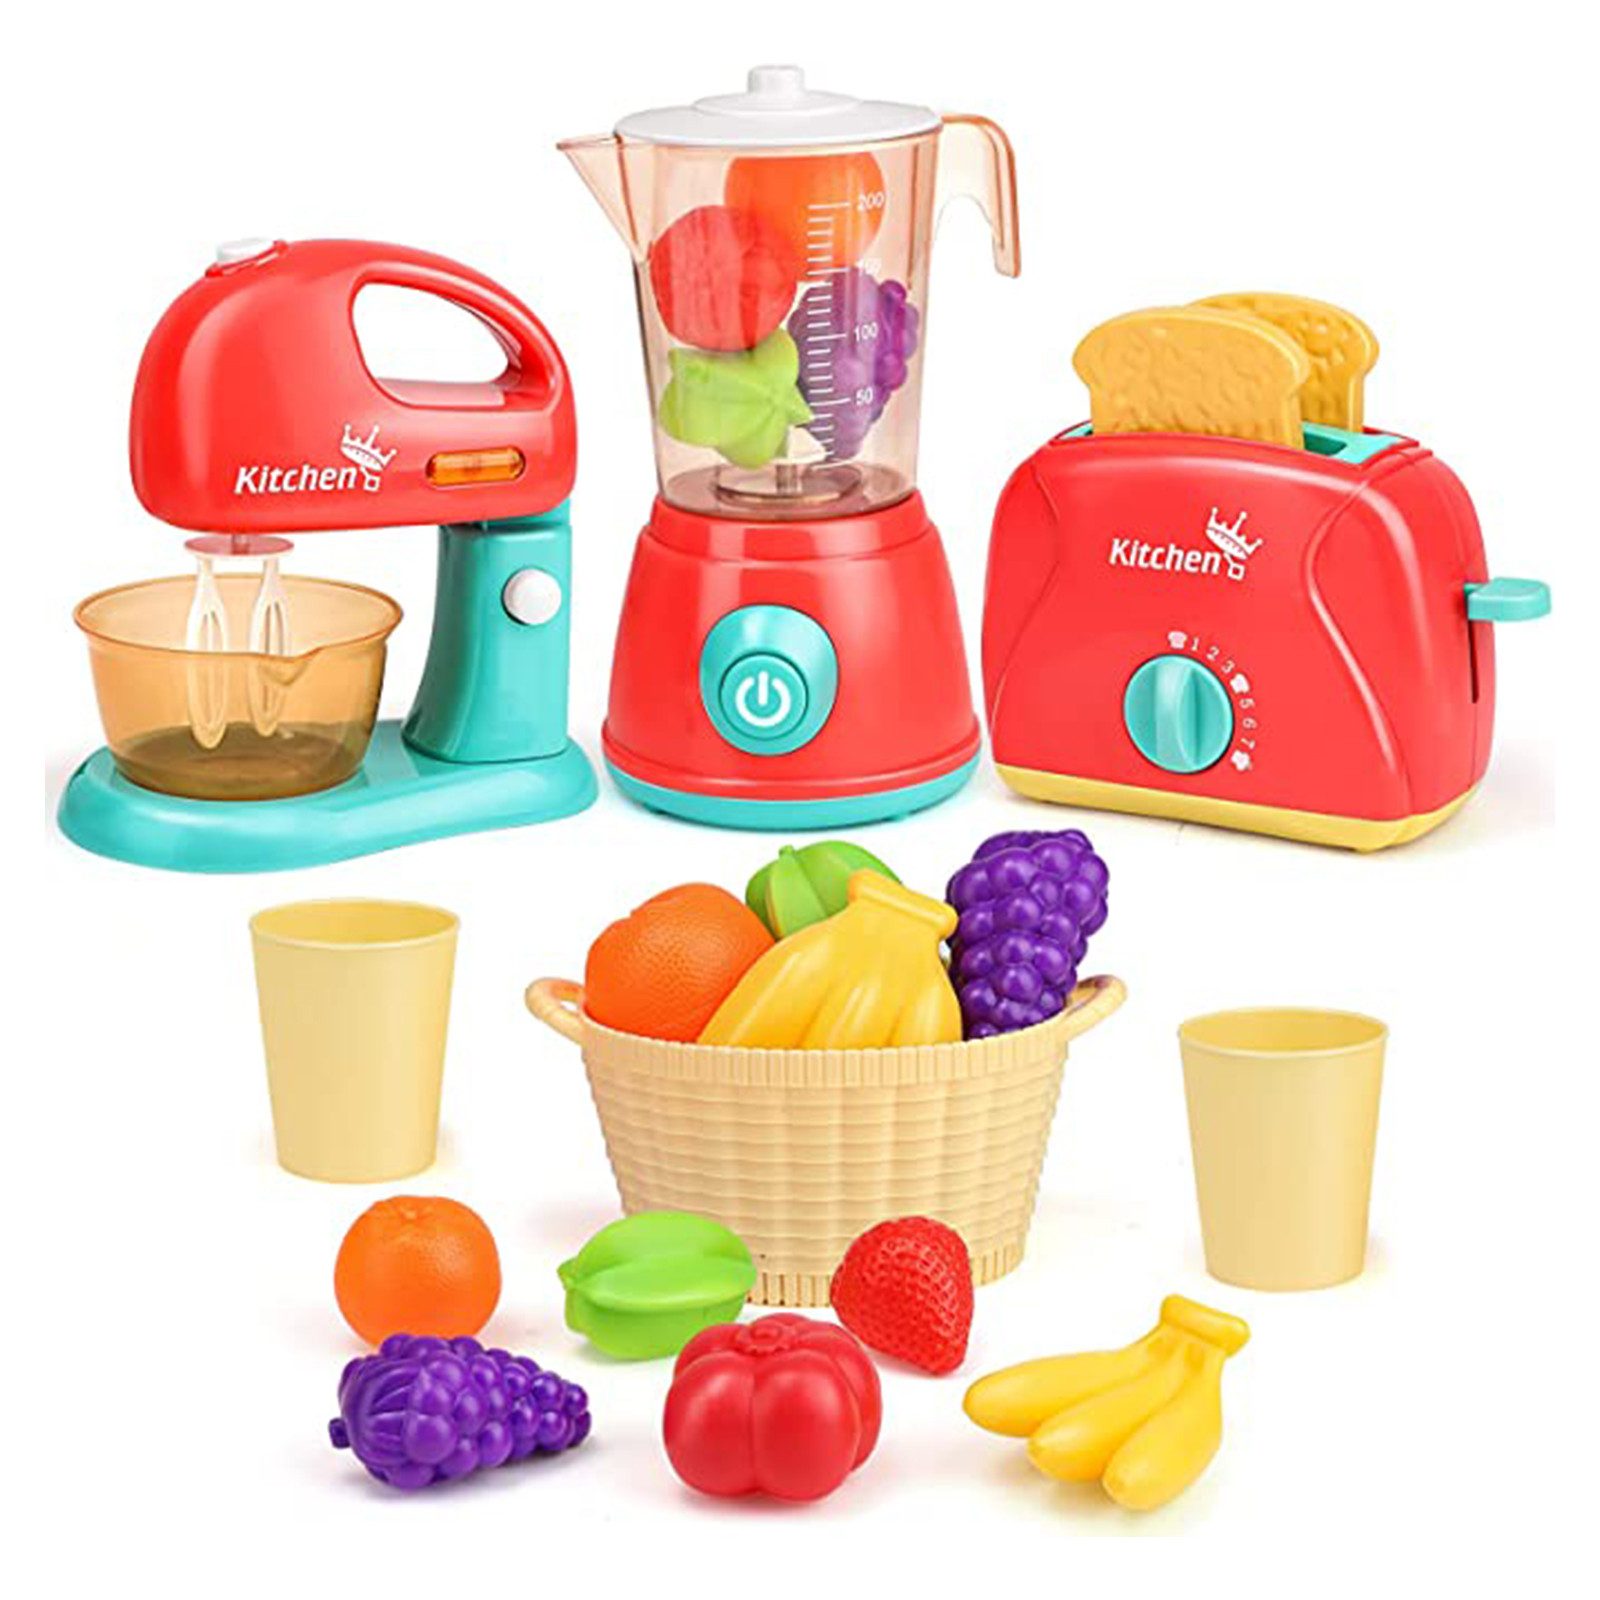 LBLA Lernspielzeug Spielküche Küchenspielzeug für Kinder, Weihnachtsgeschenk, Kinderküche Rollenspiele Pädagogisches Spielzeug Geschenk